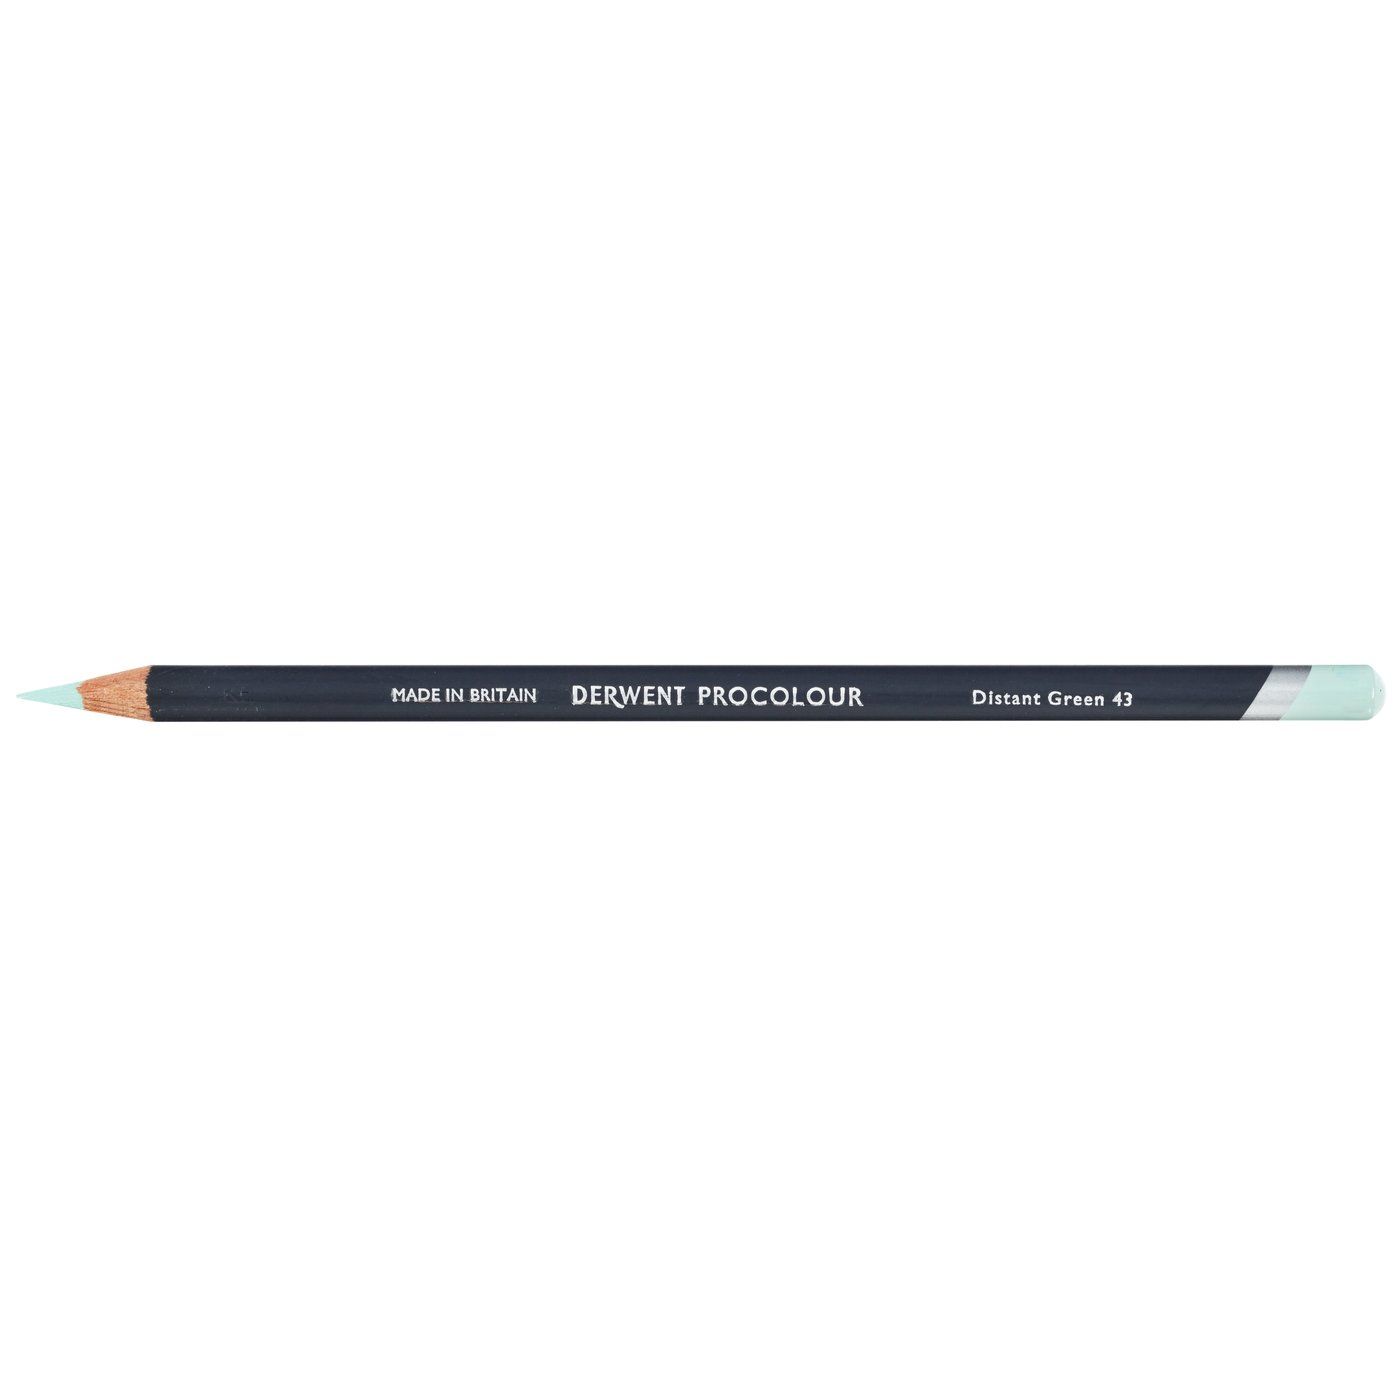 Derwent Procolour Pencil - 43 Distant Green